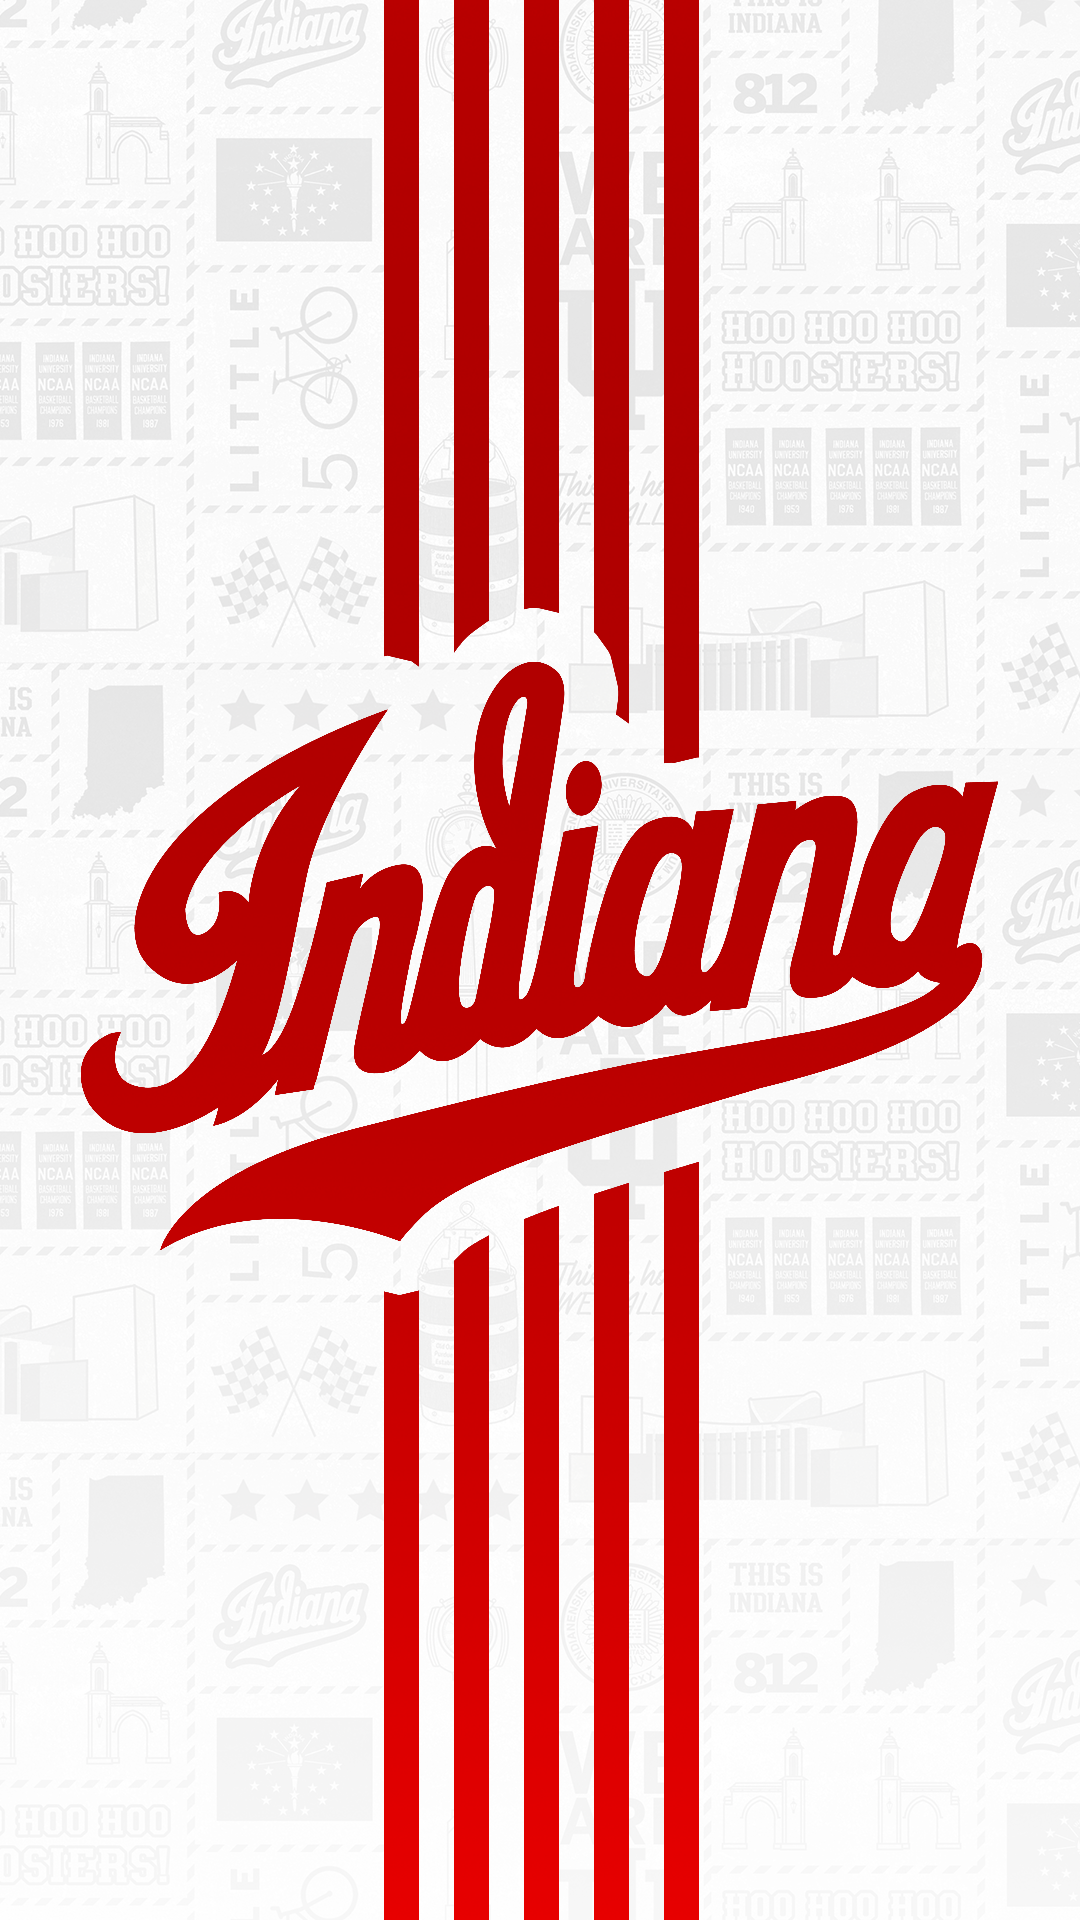 Indiana Basketball Logo - Phone Wallpapers - Indiana University Athletics